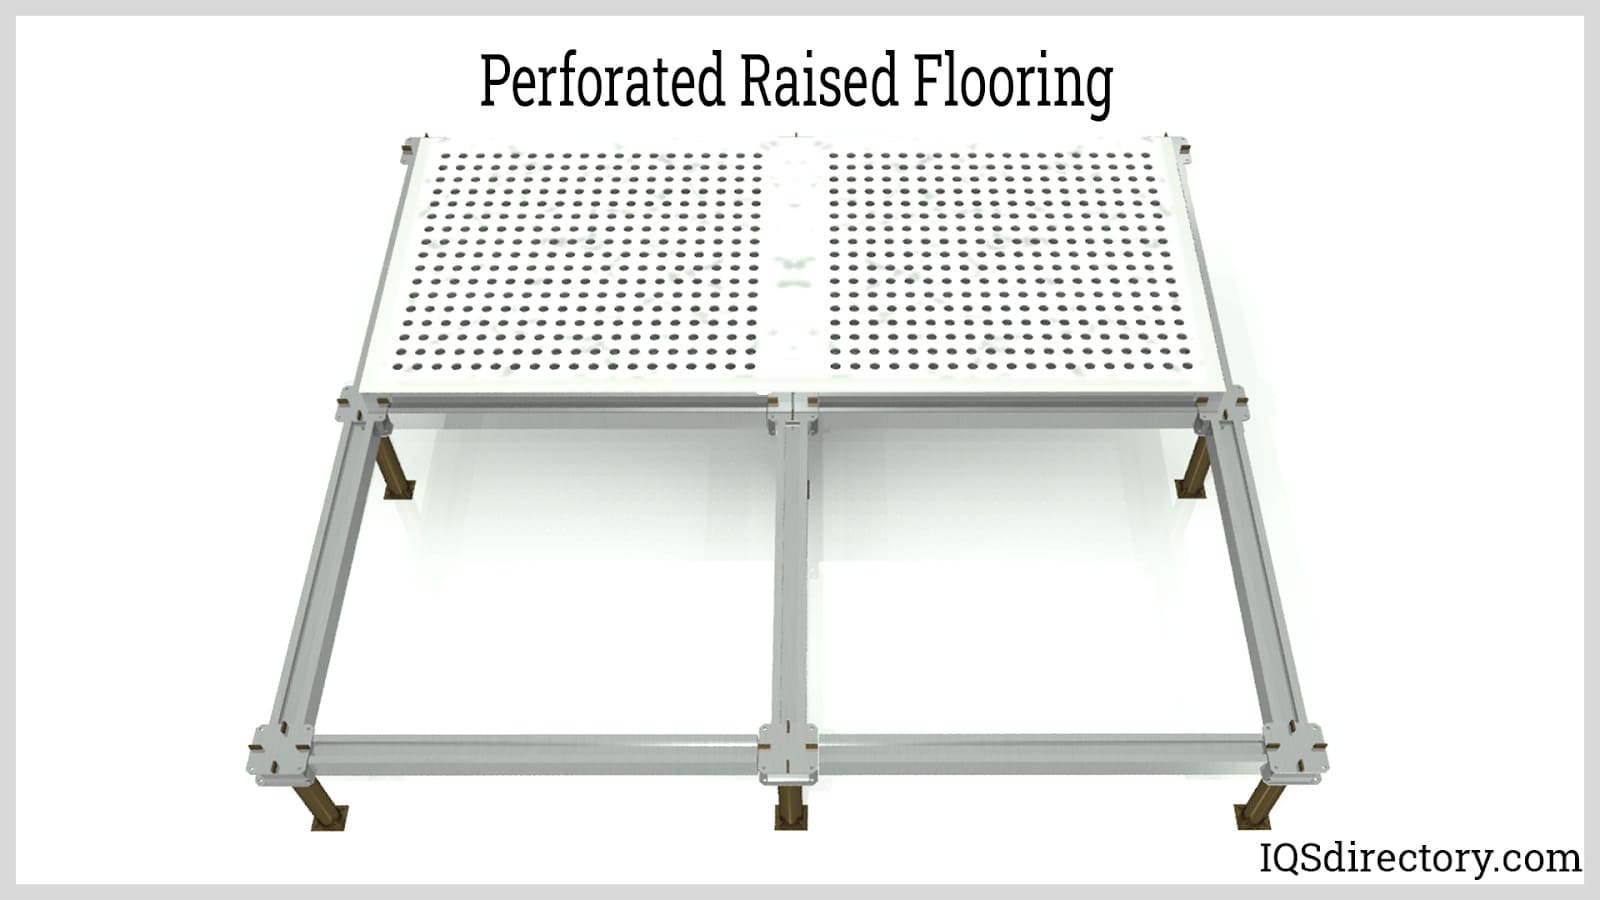 Perforated Raised Flooring